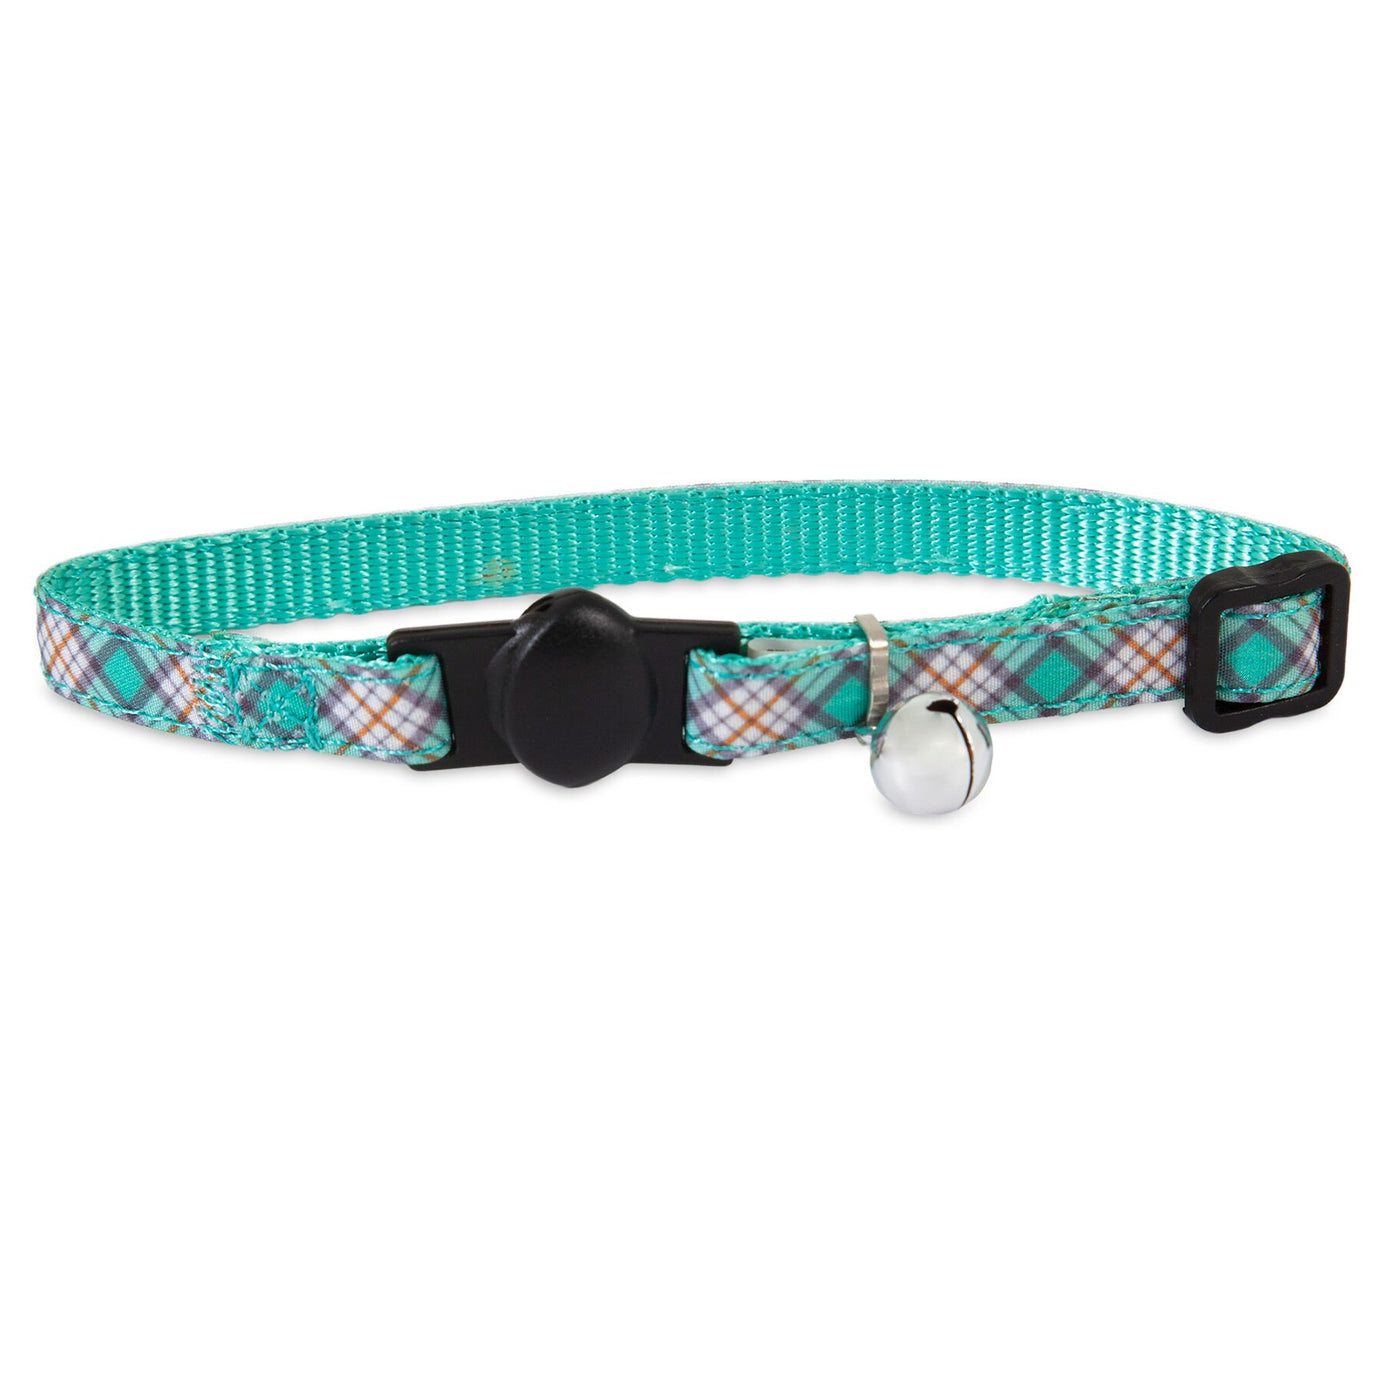 Petmate Teal Plaid Adjustable Cat Collar. SKUS: 12368